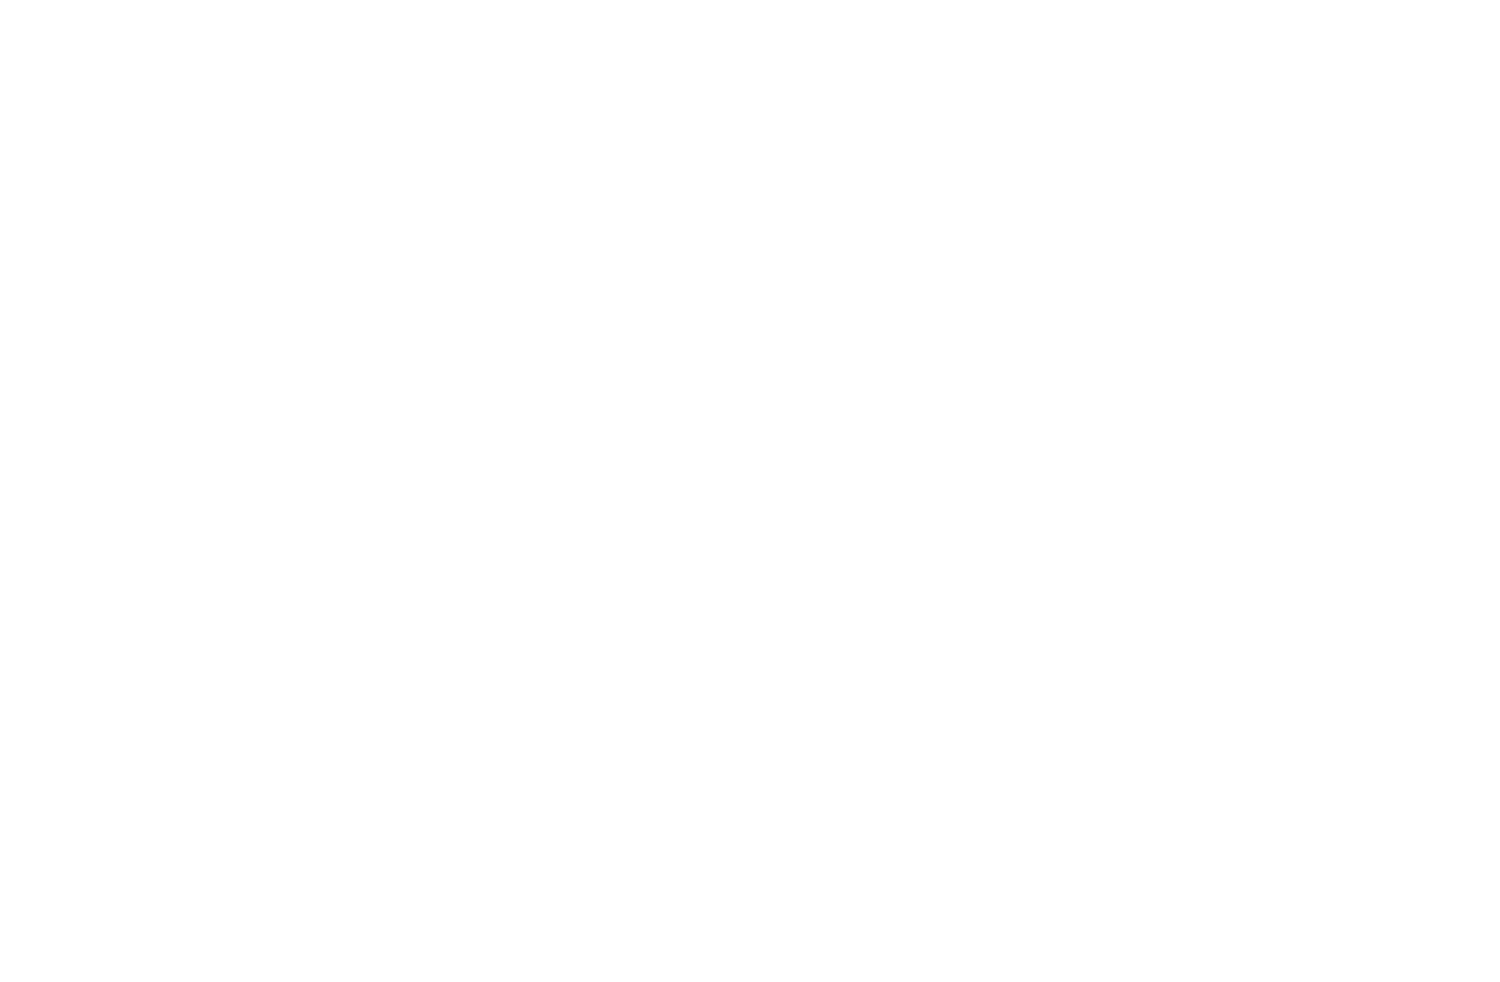 SAM GROSSER BOOKS